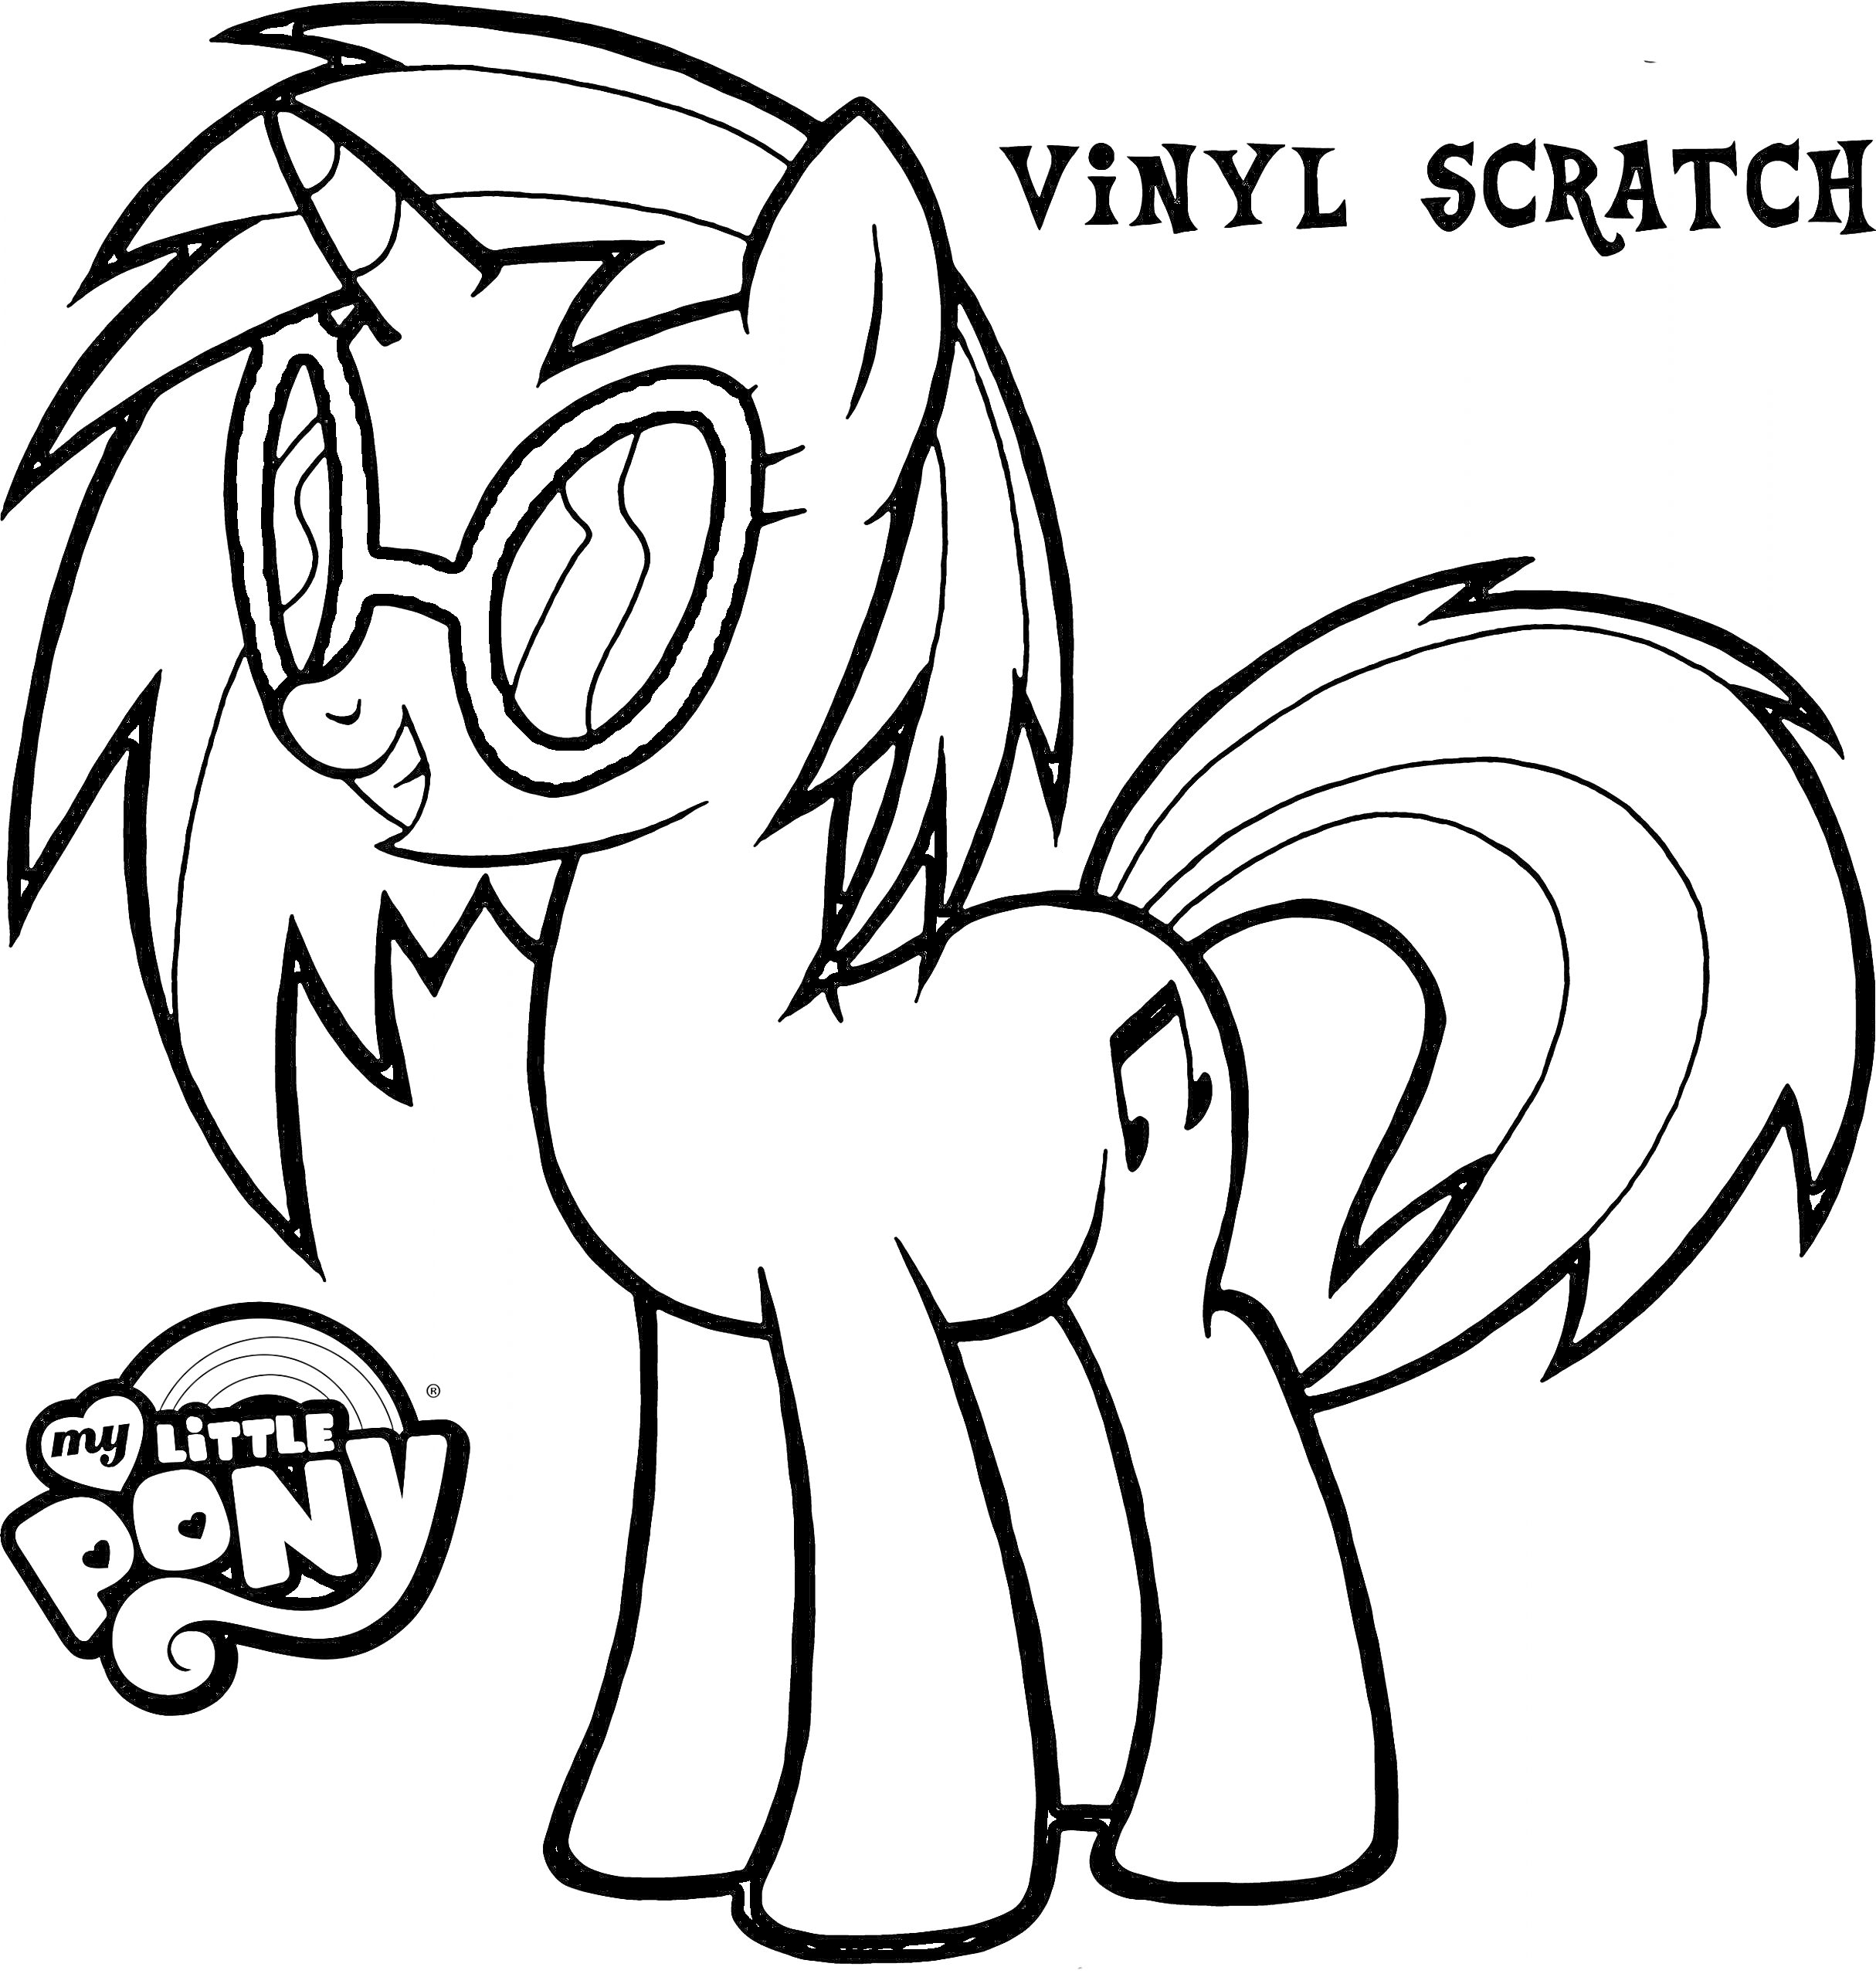 Раскраска Пони с очками и музыкальной нотой на боку, надпись VINYL SCRATCH, логотип My Little Pony